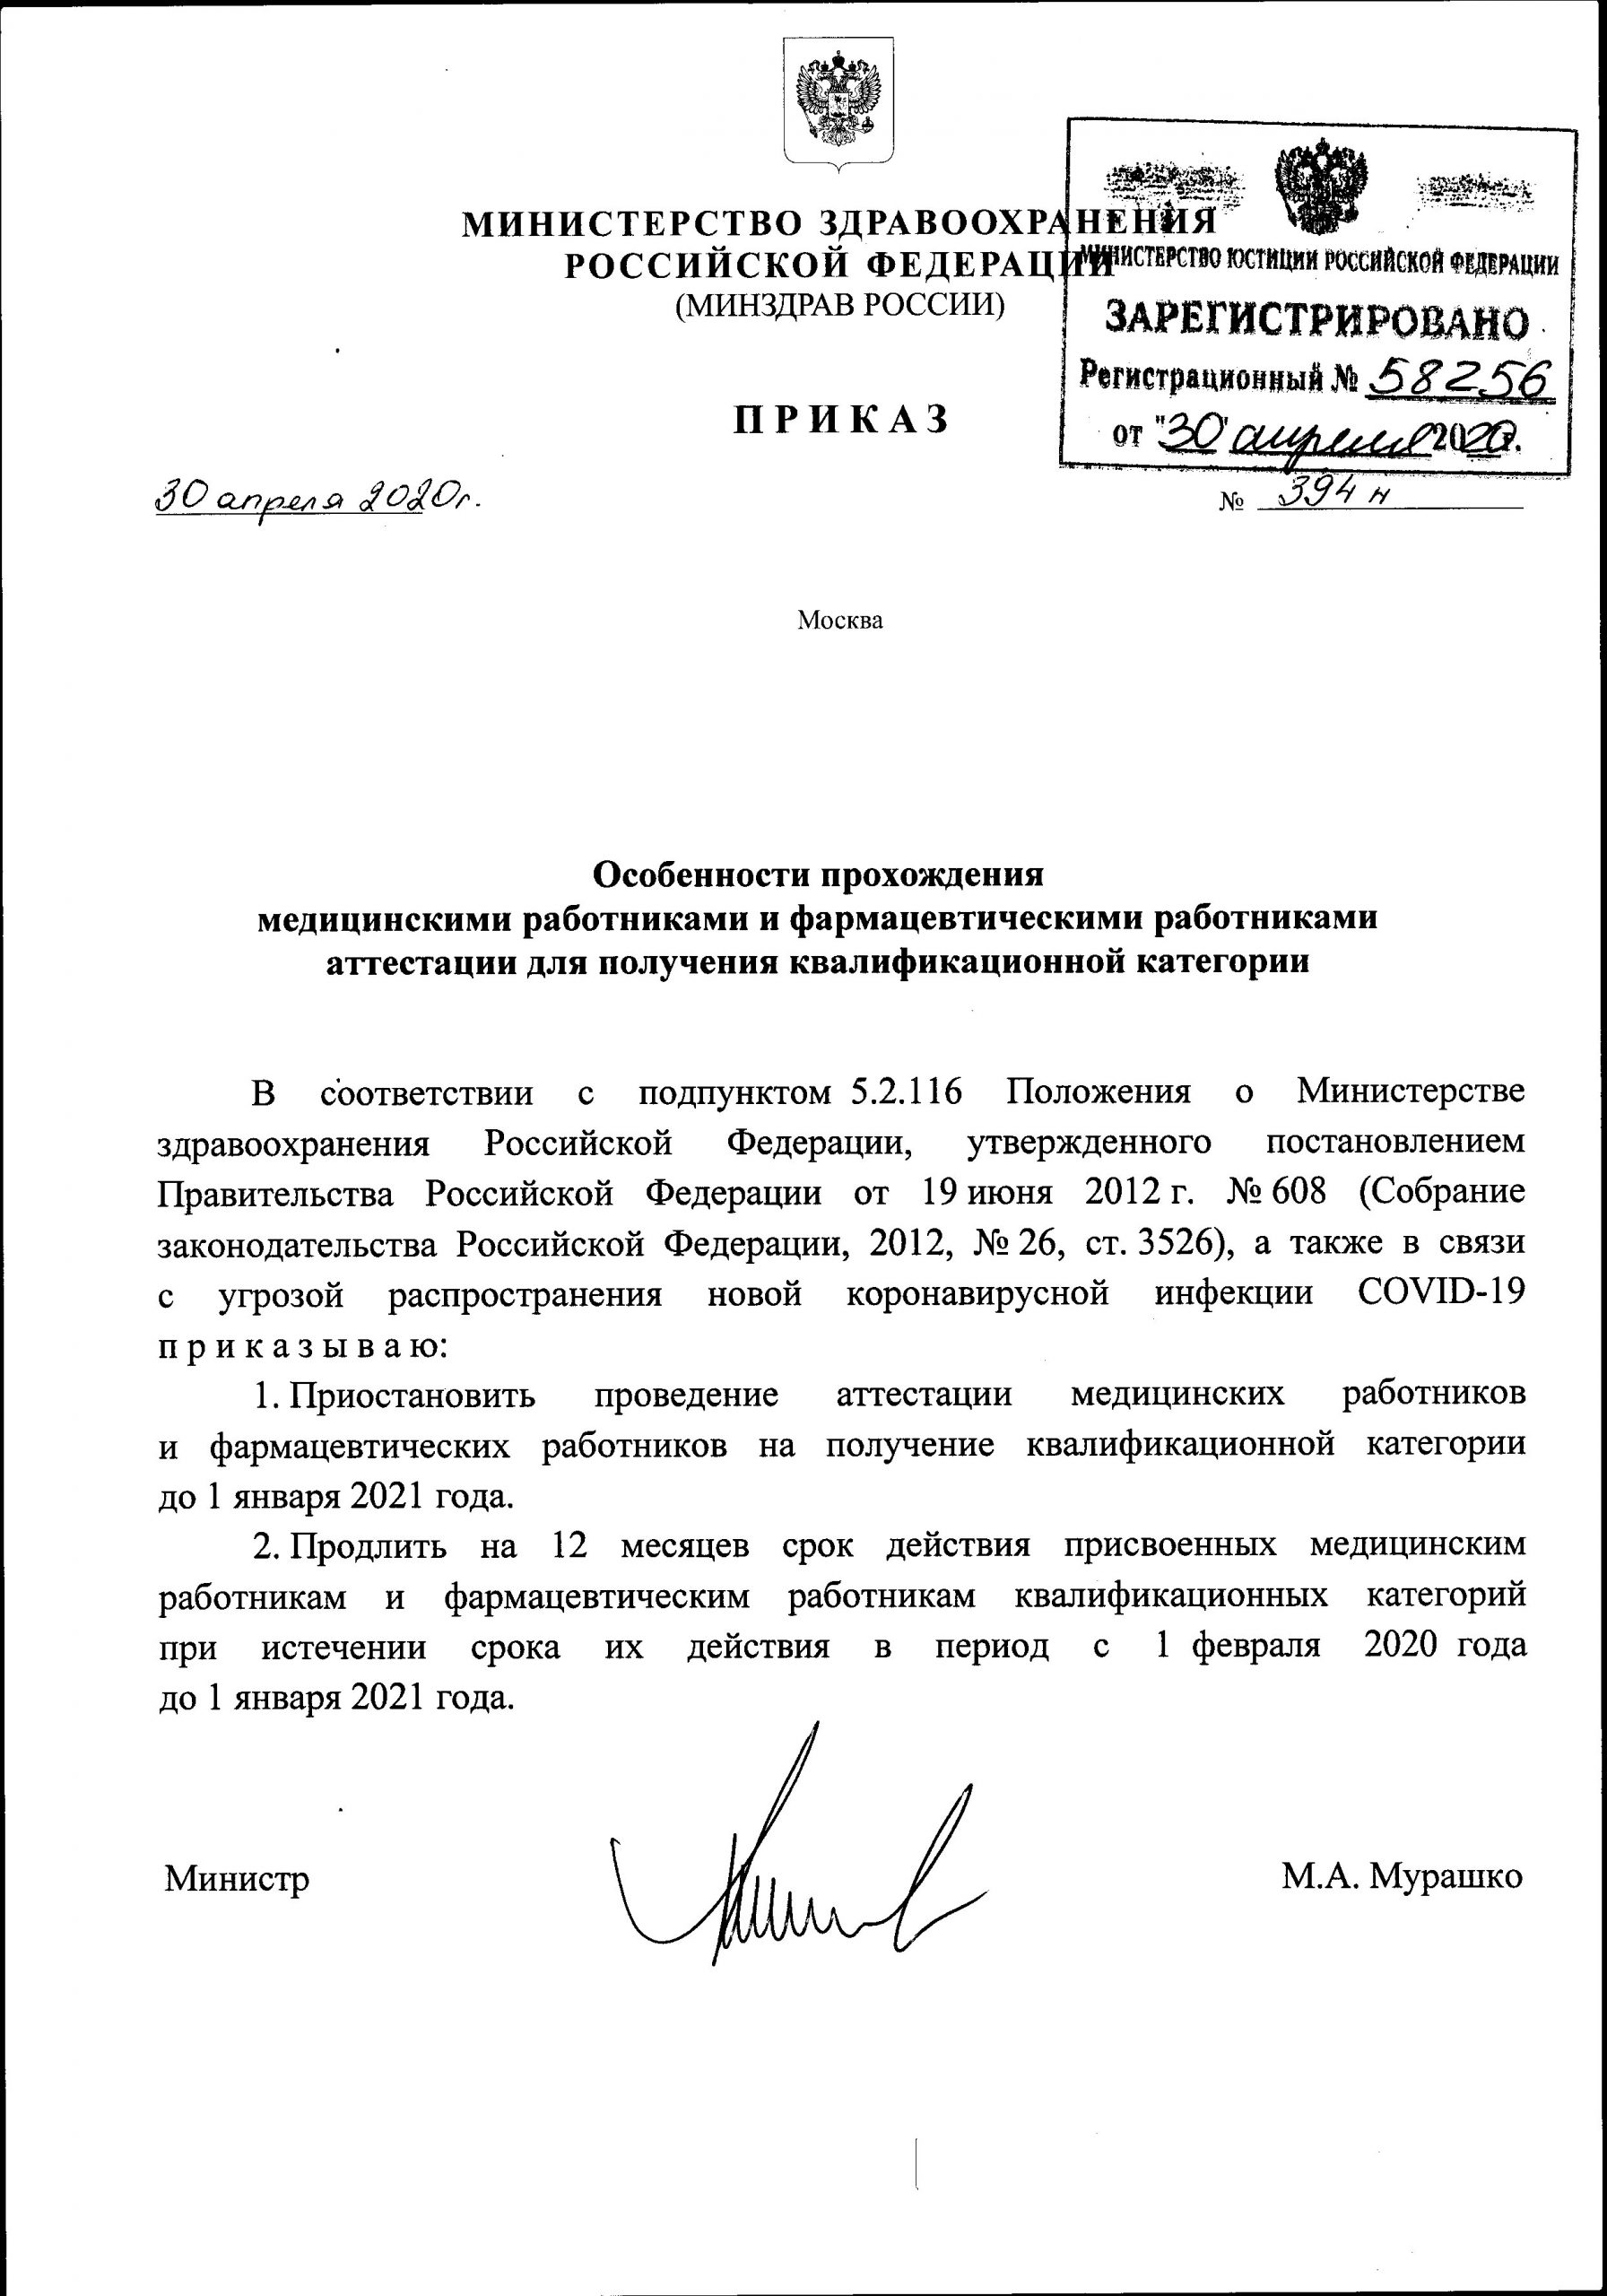 Приказ Министерства РФ от 30.04.2020 №394-н